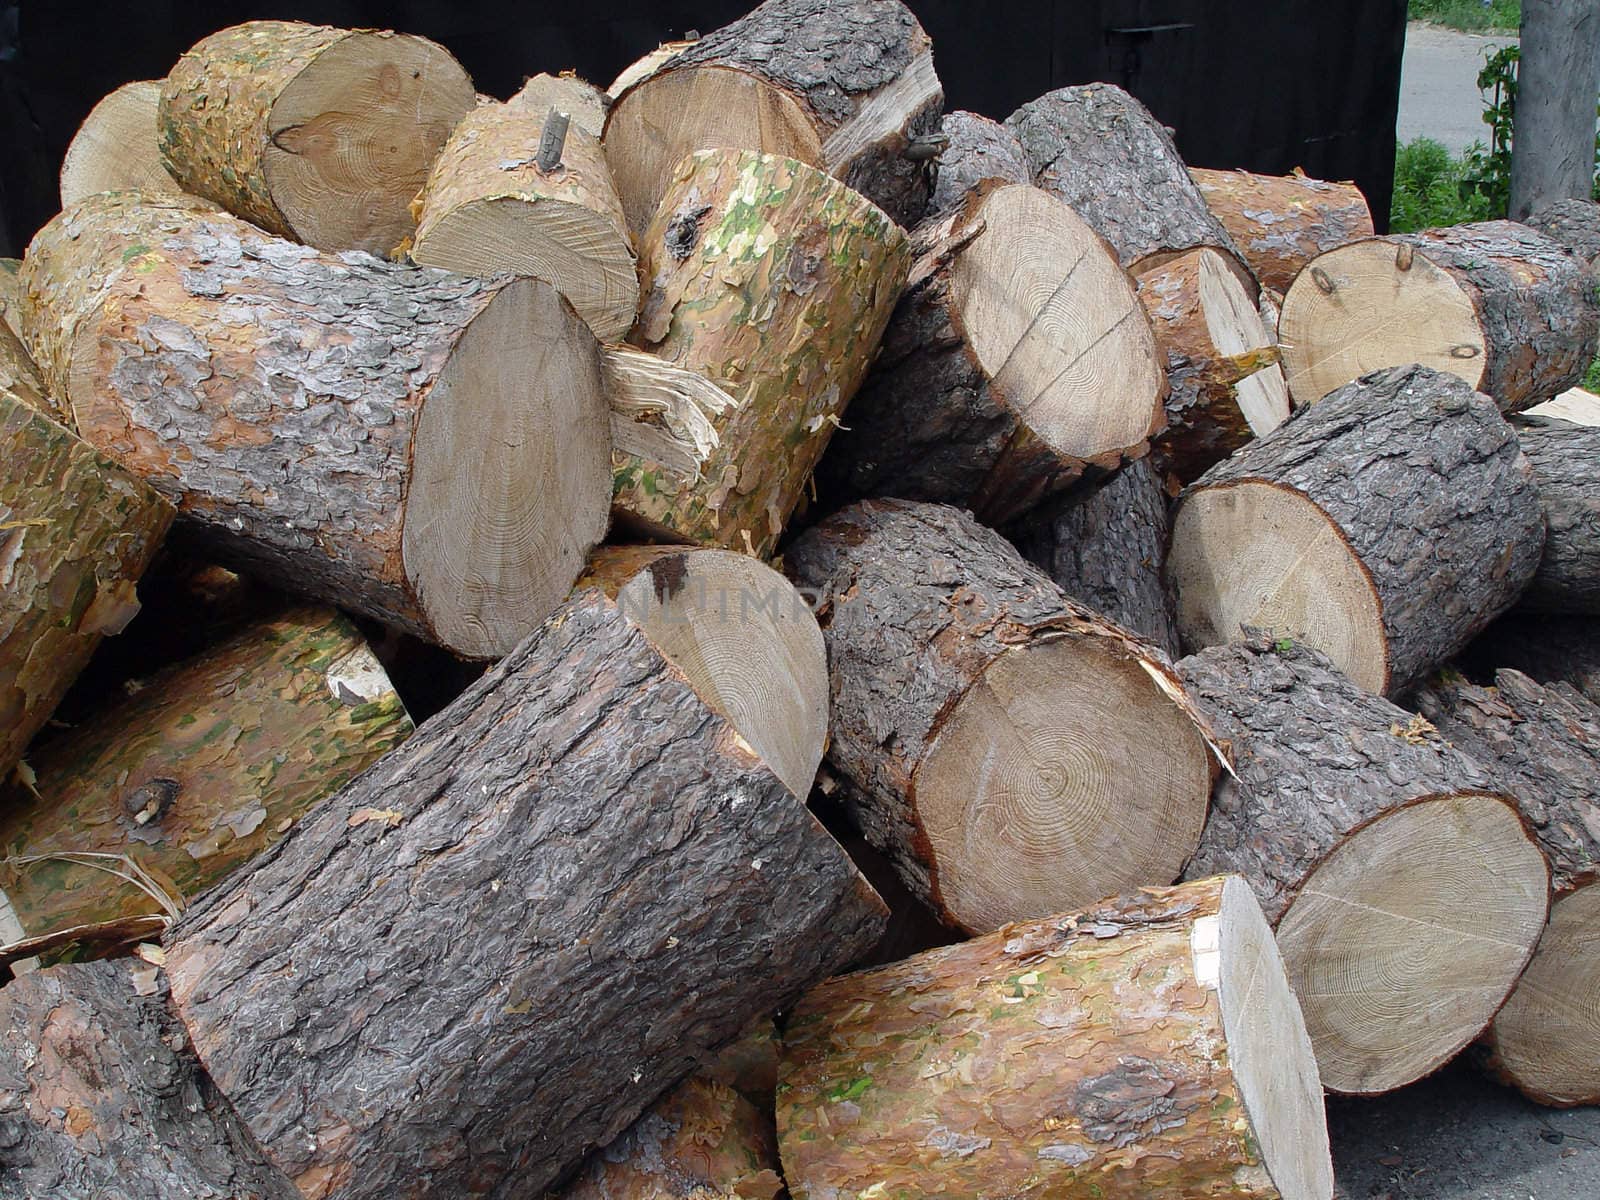 Pile of pine tree logs by Sergius